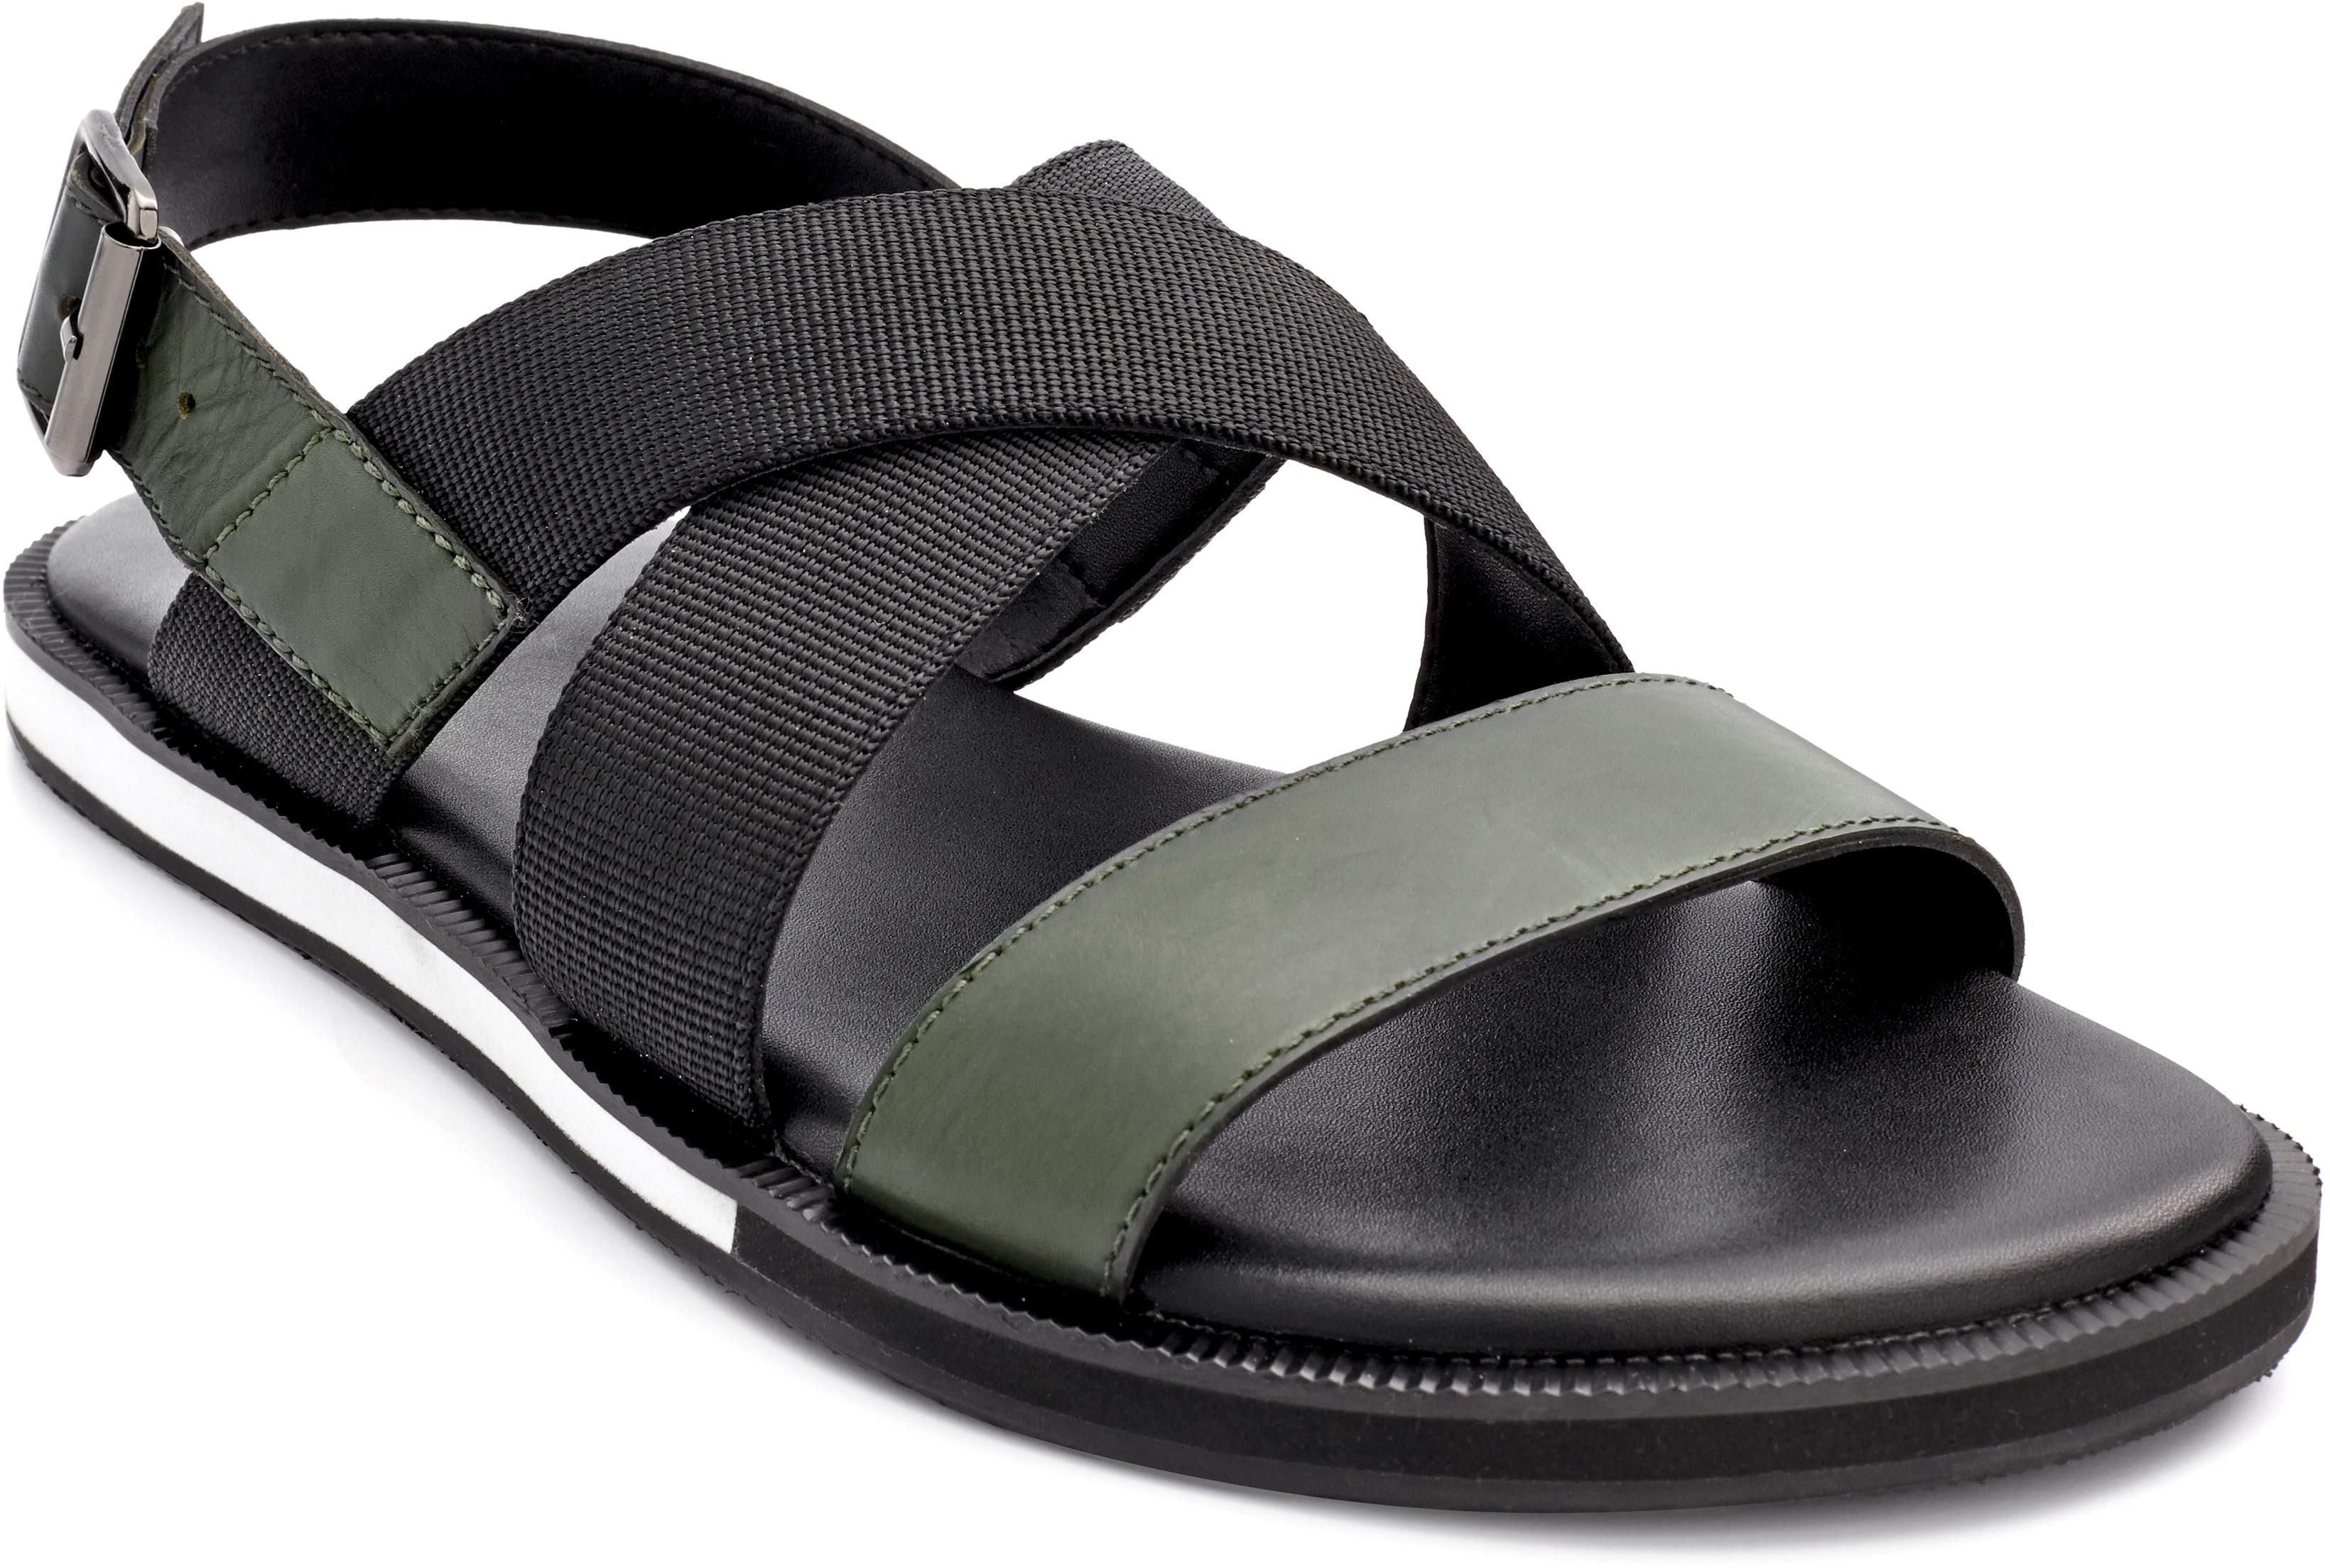 Projet1826 Achen Back Sling Leather Sandals (Olive Green)